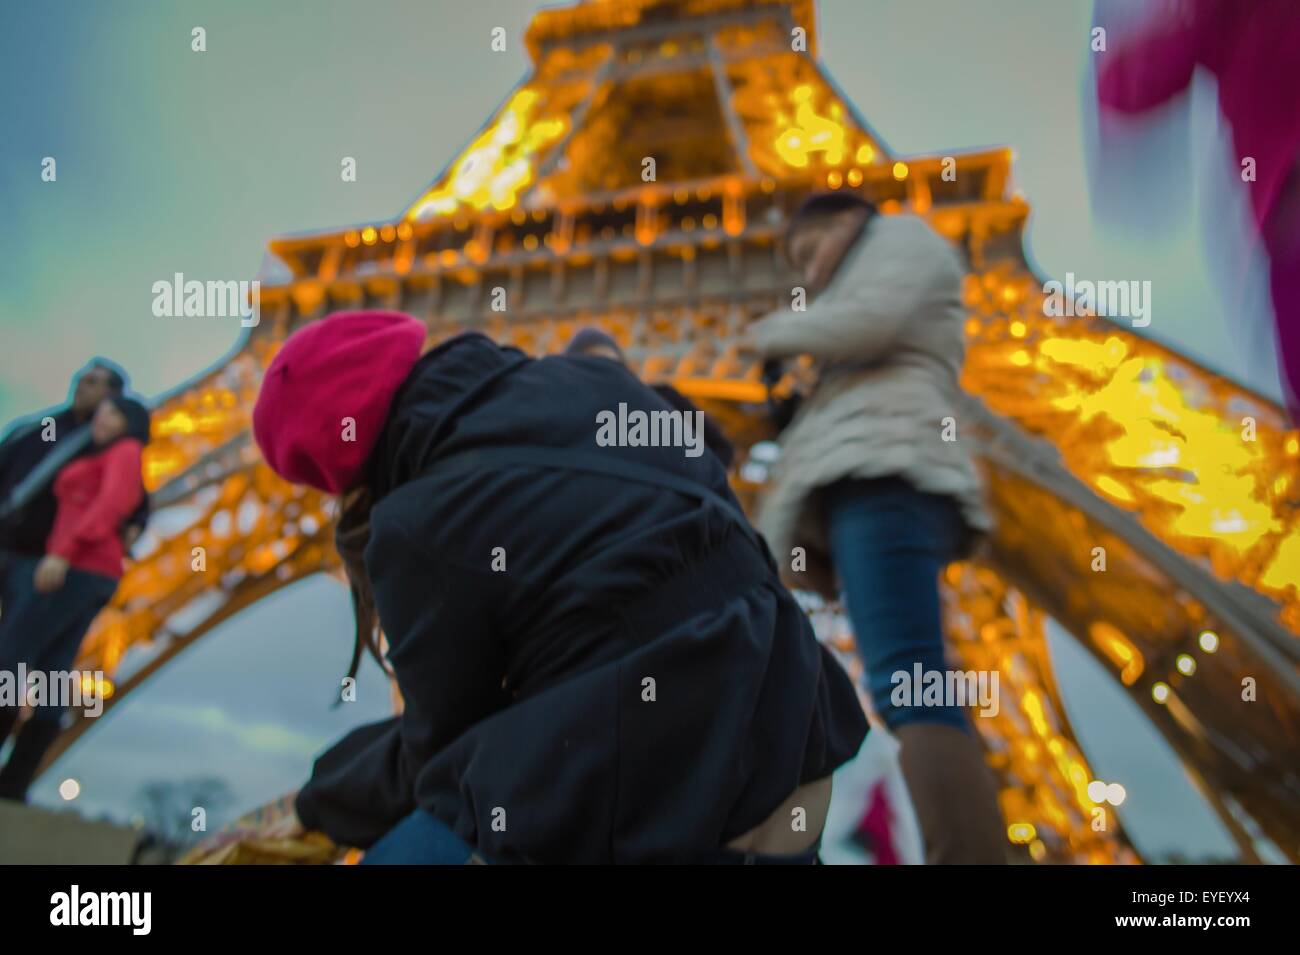 Die eiserne Lady von Paris, den Eiffelturm 22.11.2012 - Sylvain Leser Stockfoto